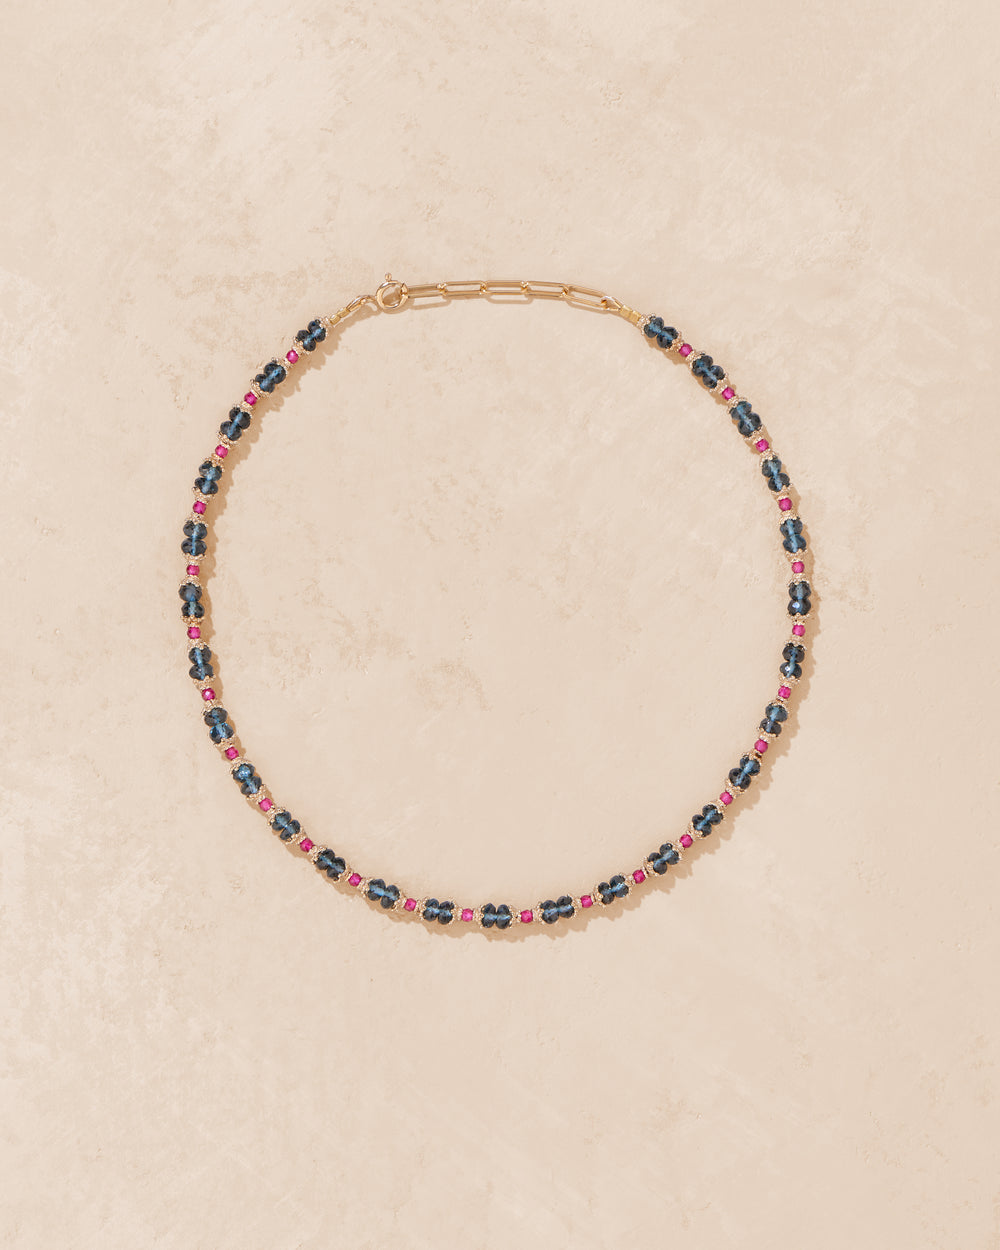 Sriphala Topaz London necklace